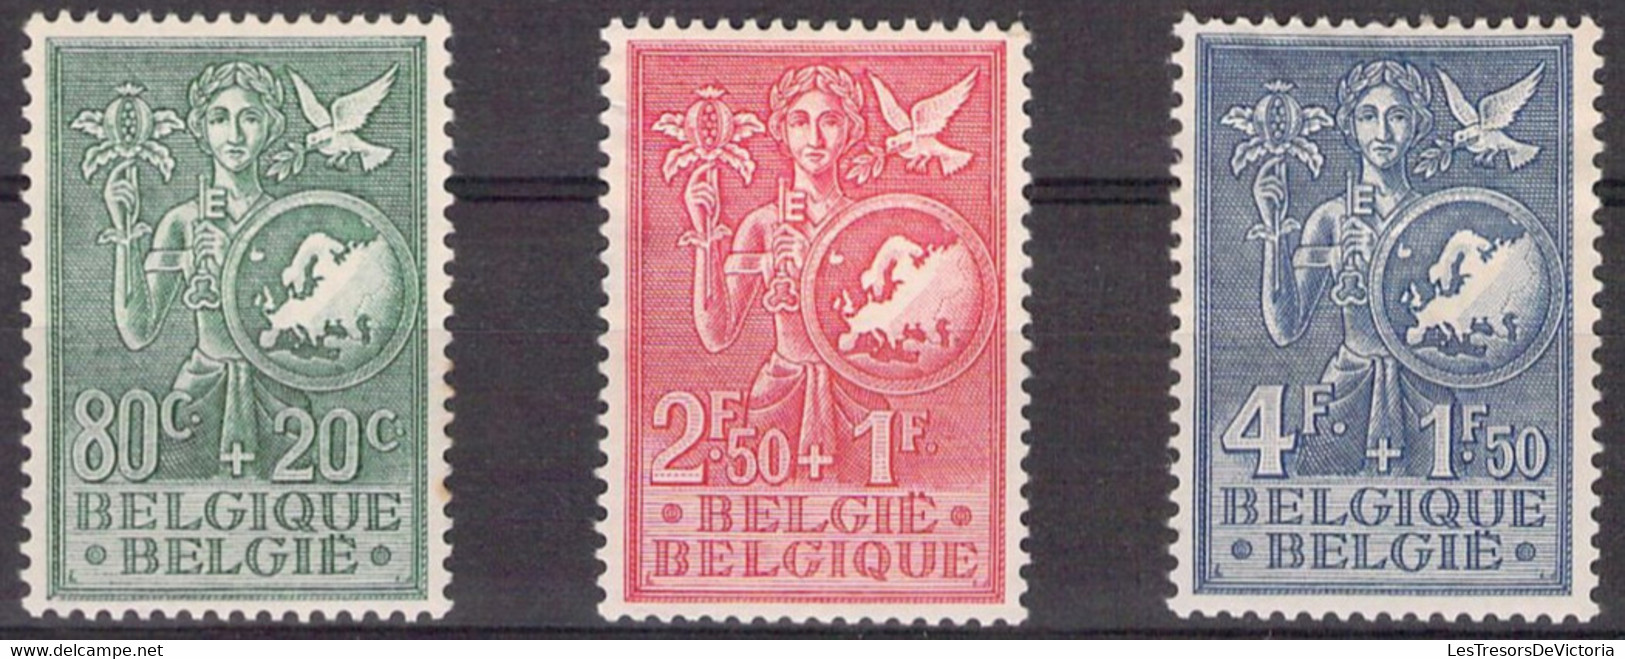 Belgique -  COB 927/29 * - 1953 - Cote 45 COB 2022 - Aminci Sur Le 929 - Prix De Départ 5 Euros - Neufs